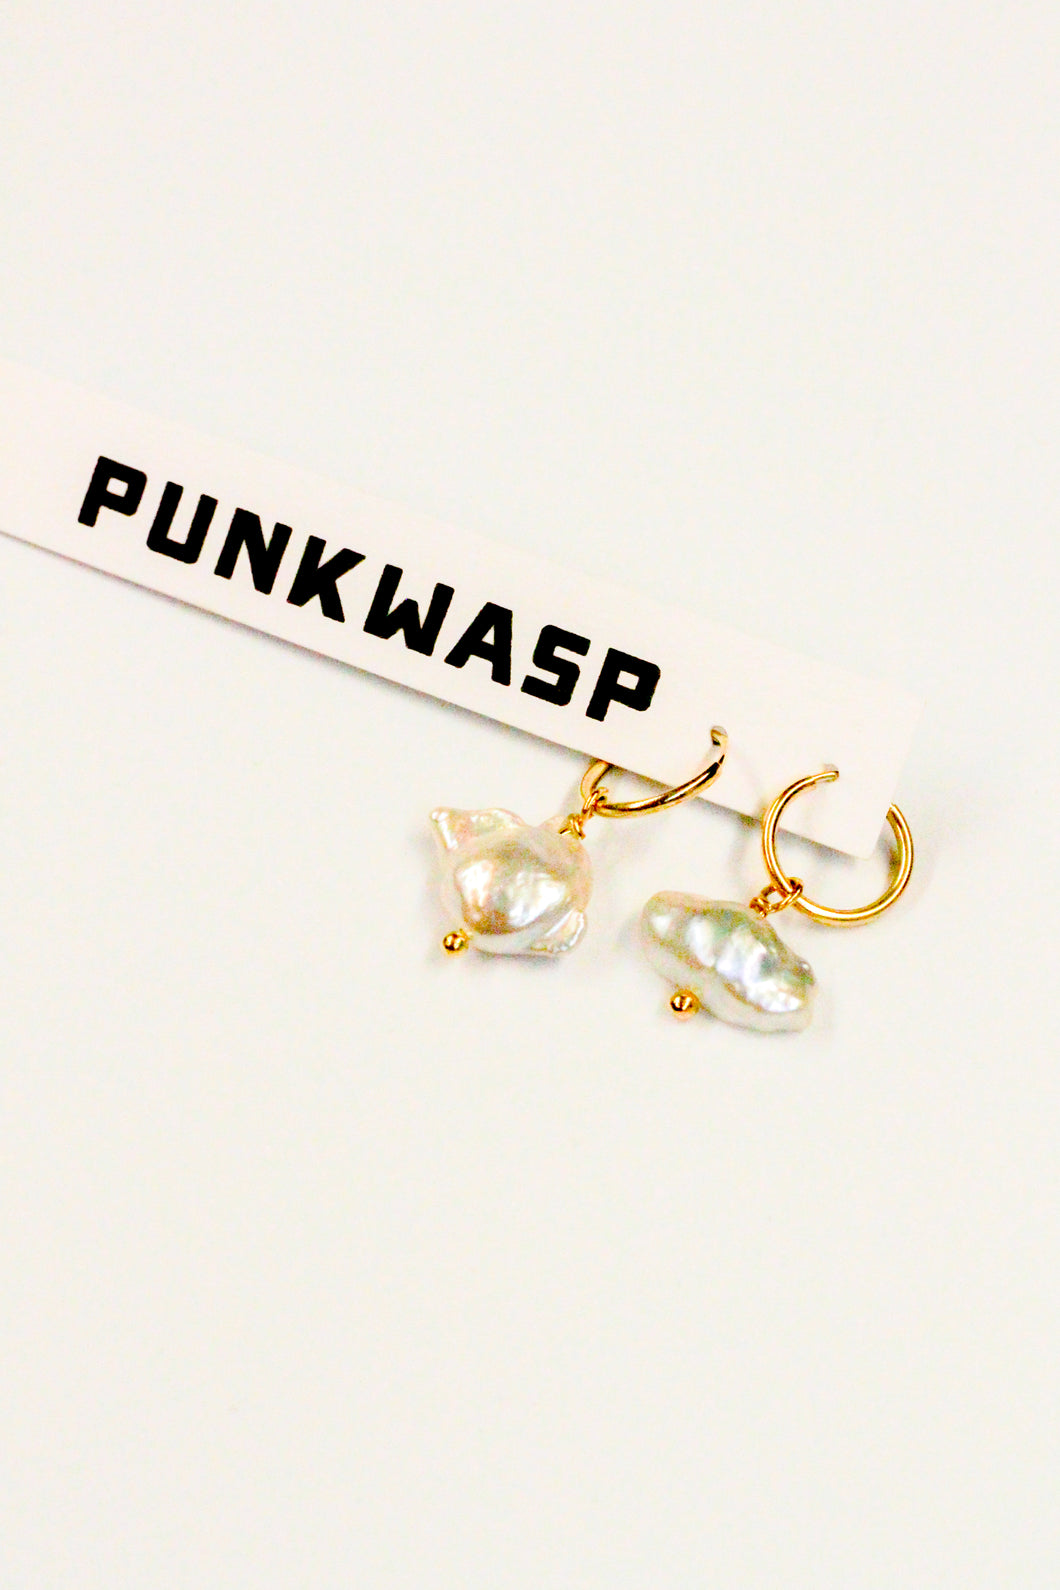 Punkwasp Pearl Cloud Earrings